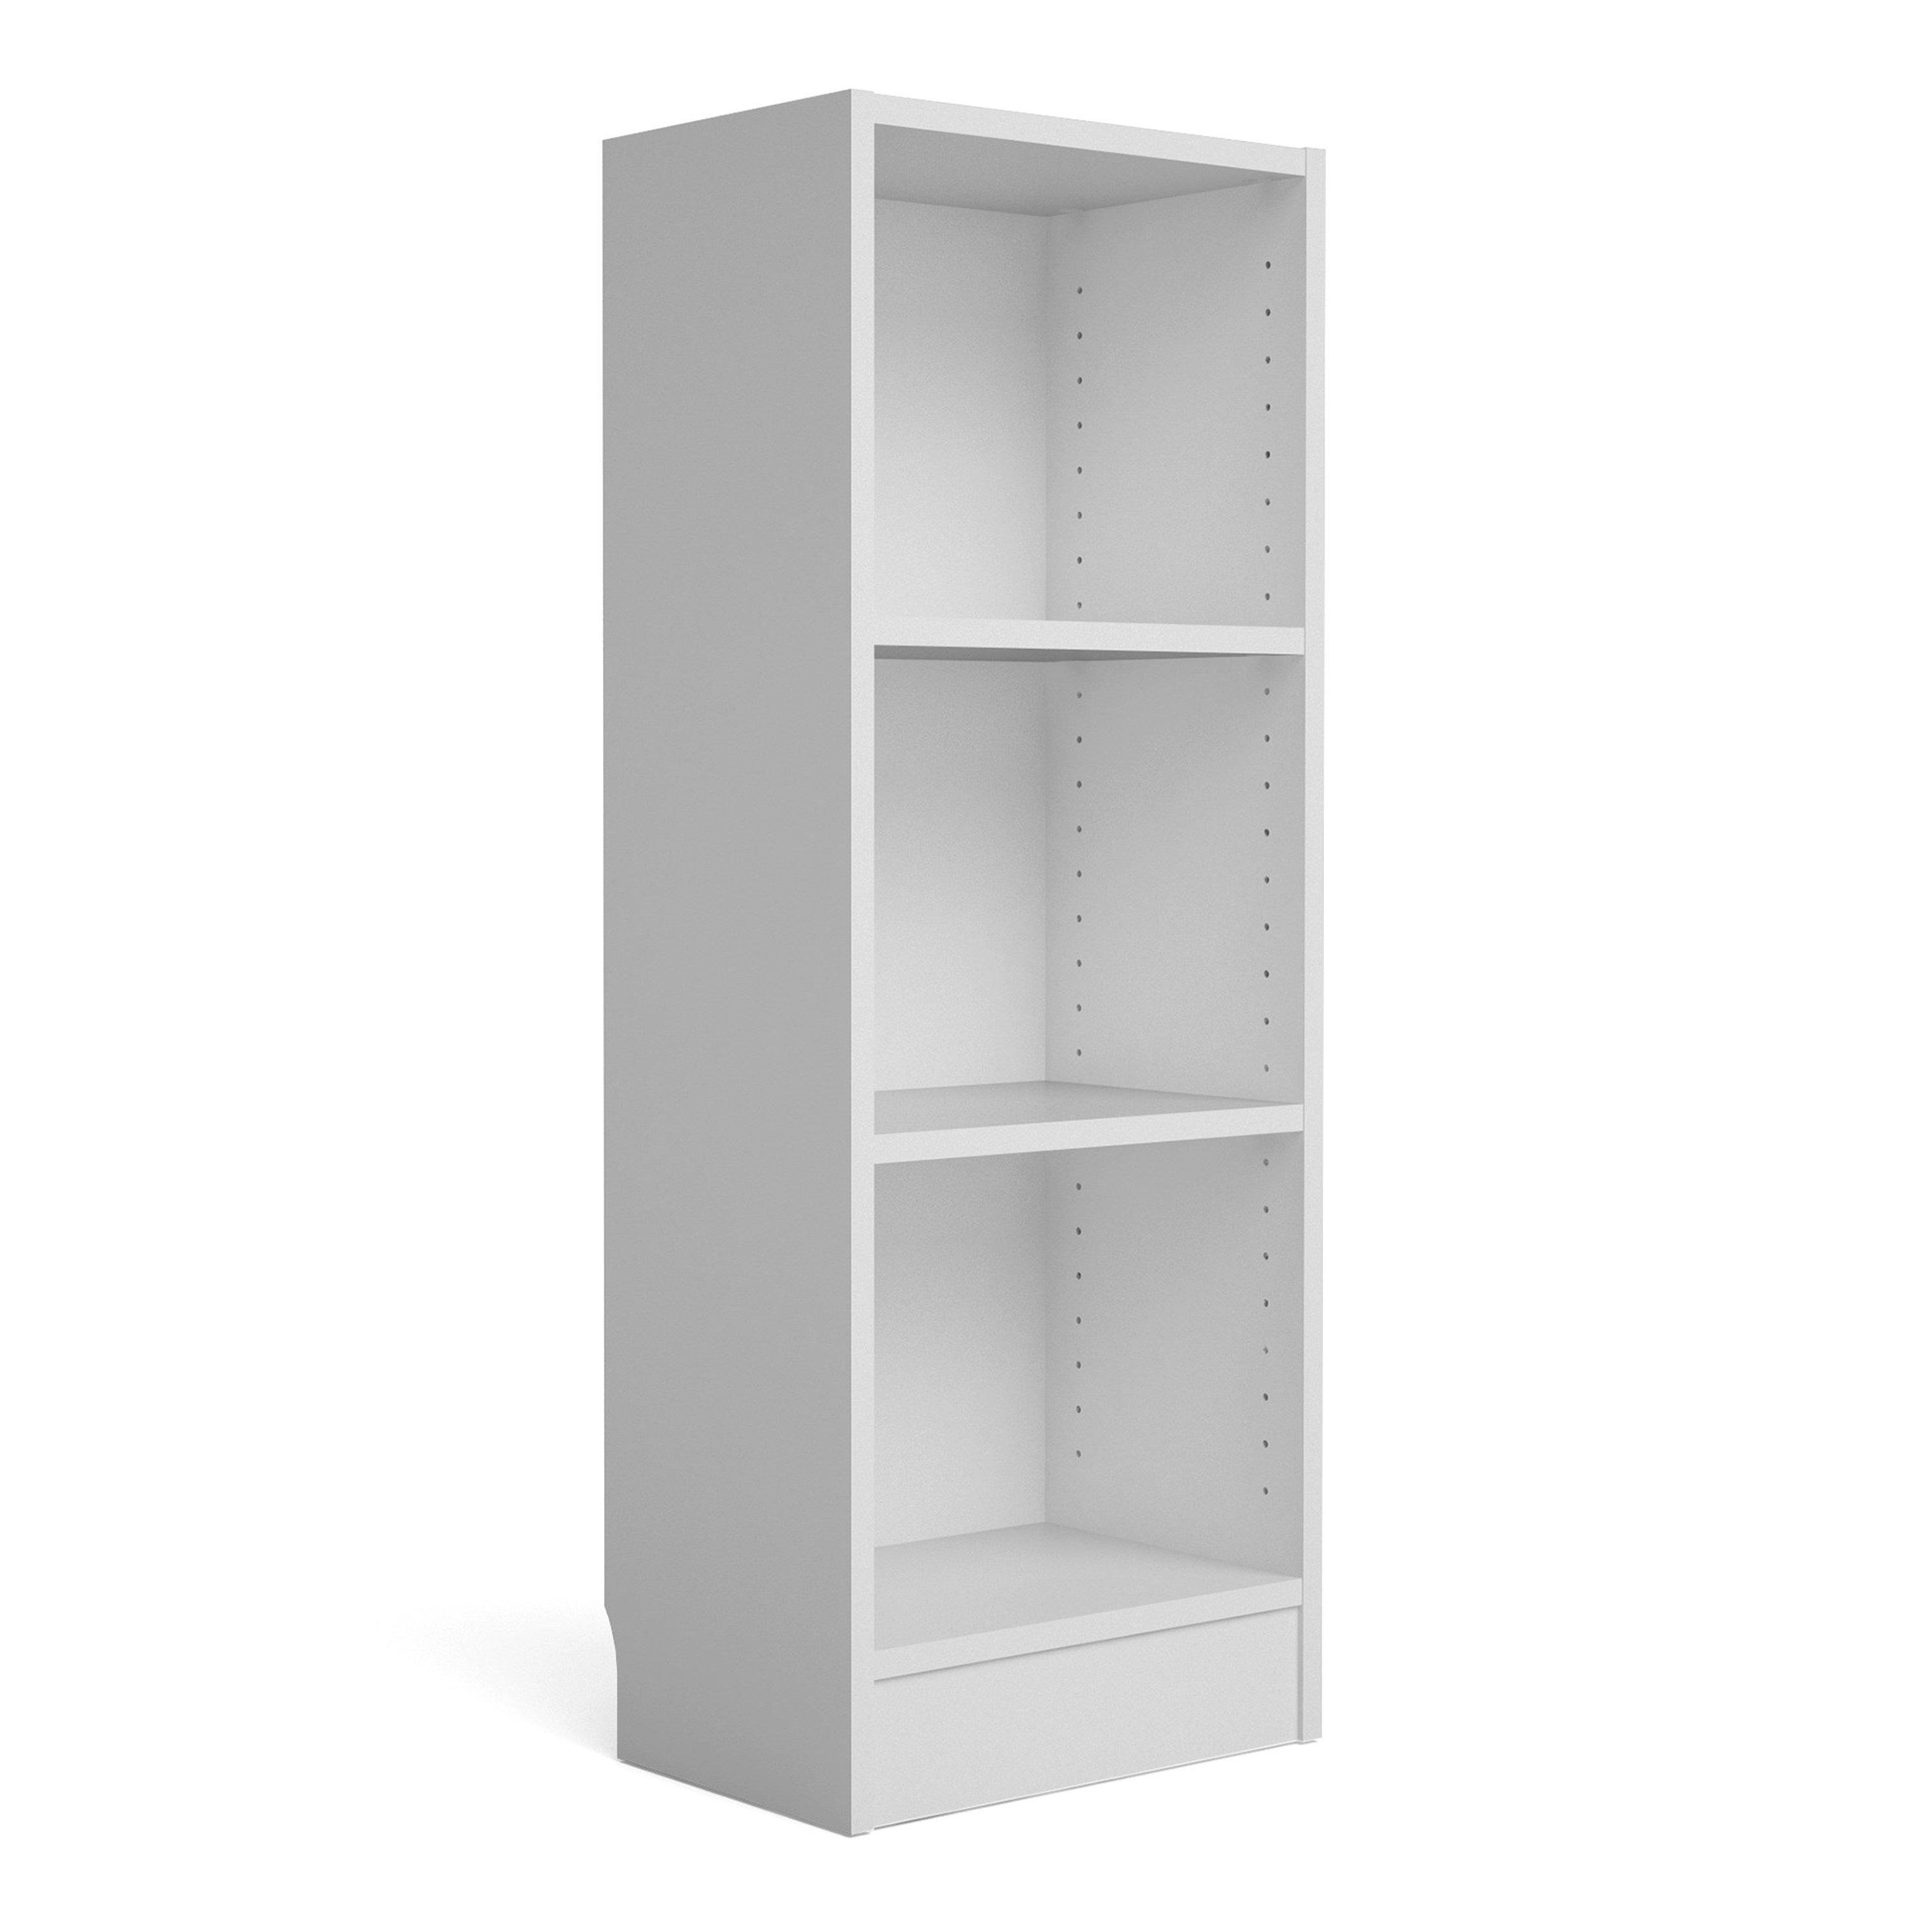 Basic Low Narrow Bookcase (2 Shelves) - image 1